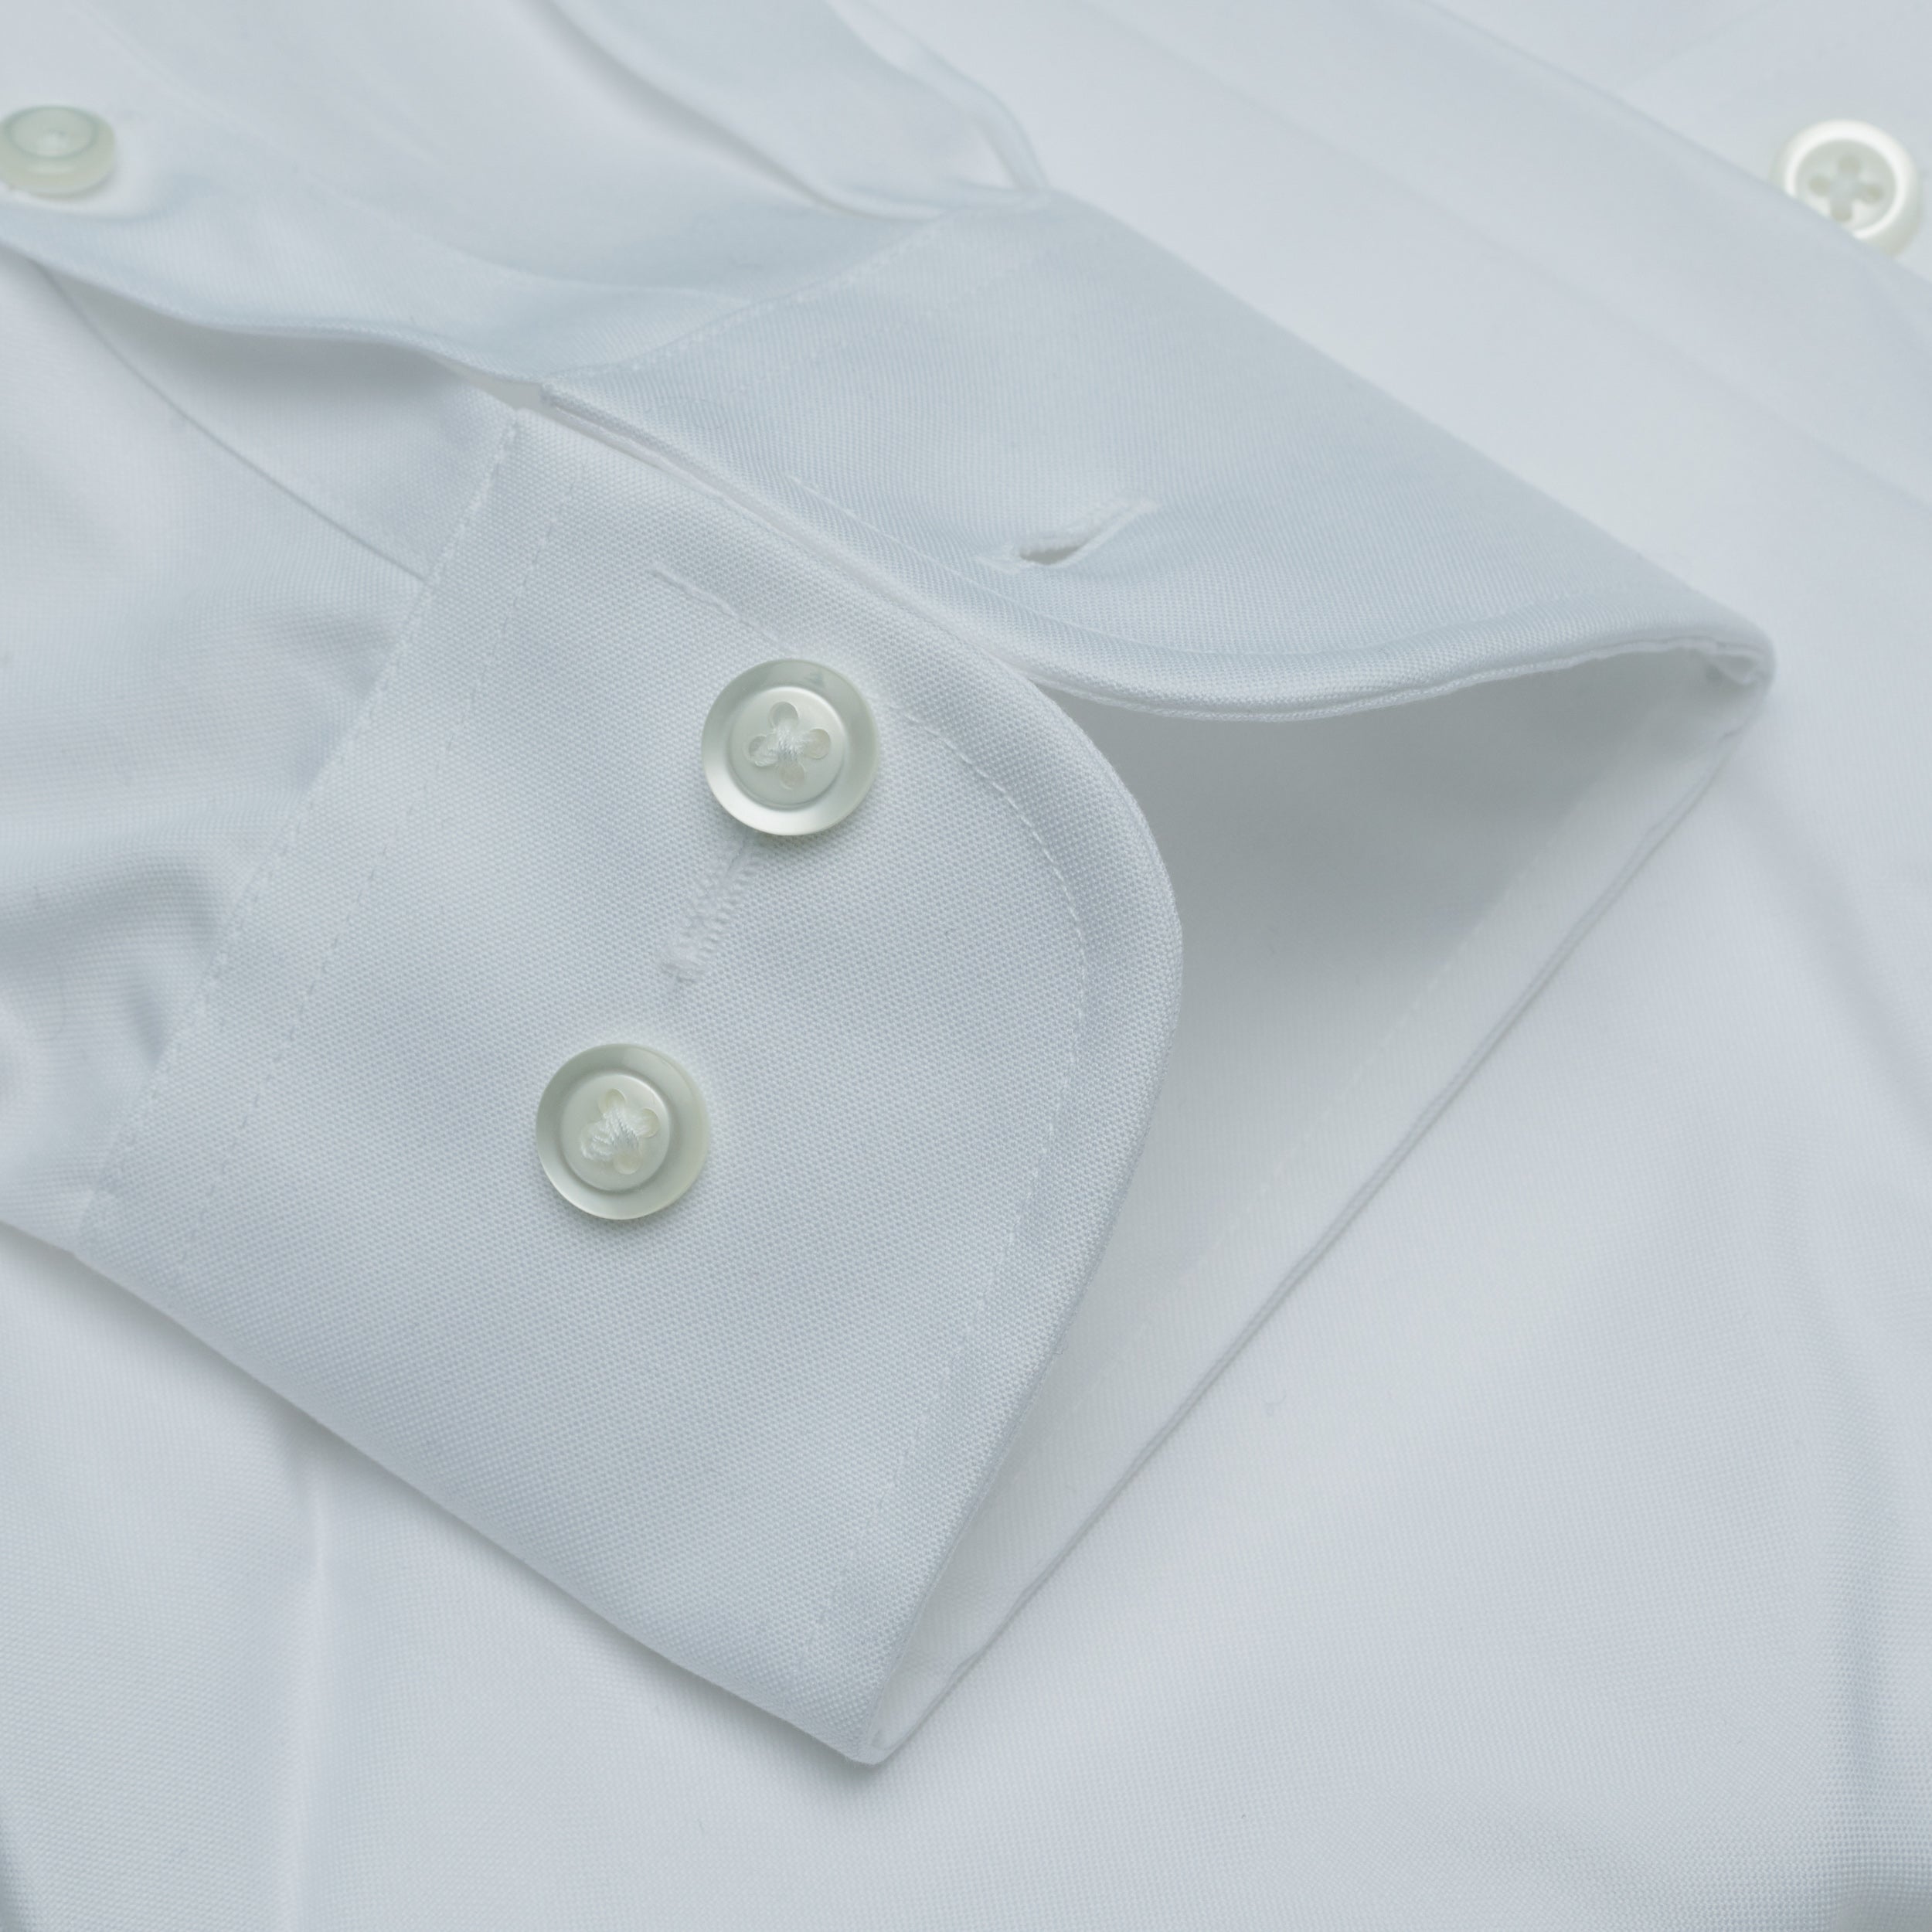 001 SC - White Spread Collar